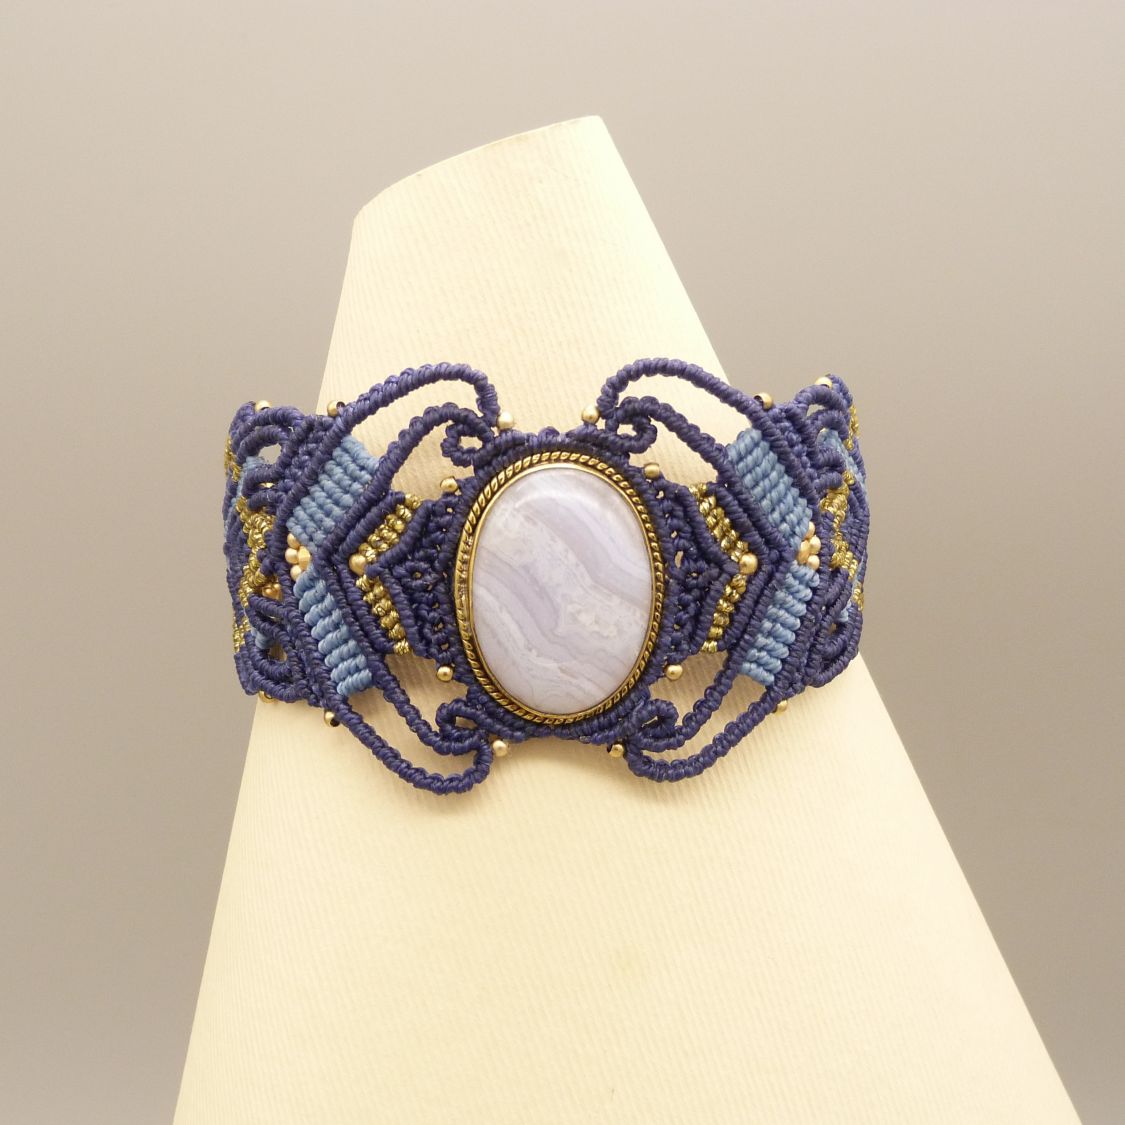 Bracelet en micro-macramé bleu nuit avec une agate rubanée sertie de métal doré